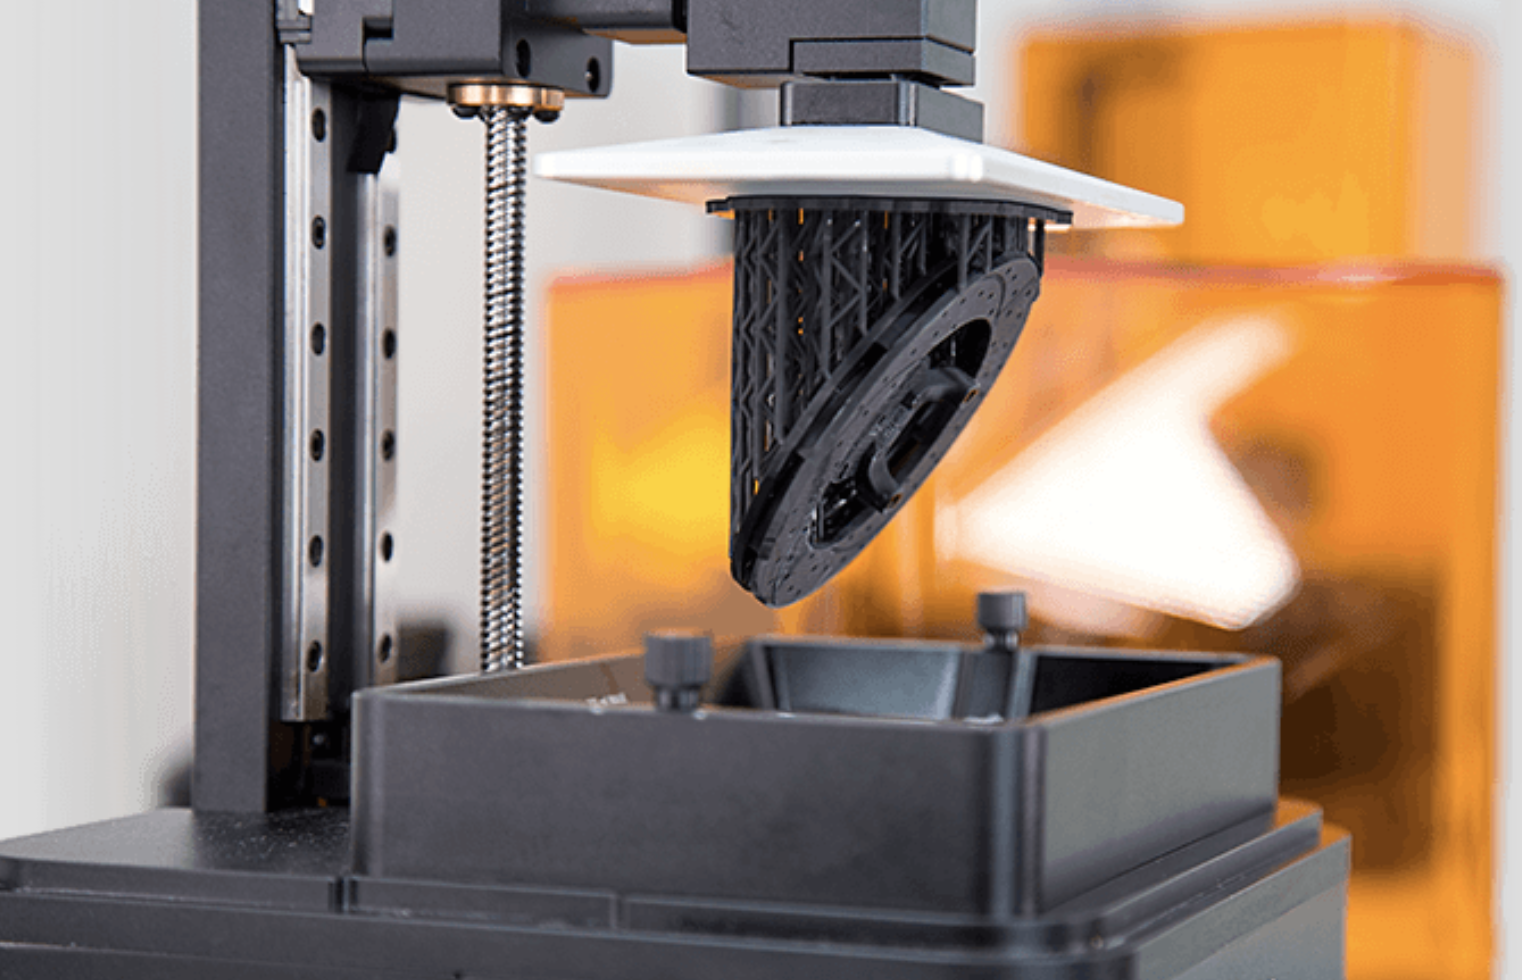 Oeganda Kust Harnas Choosing the Right 3D Printer: FDM vs SLA